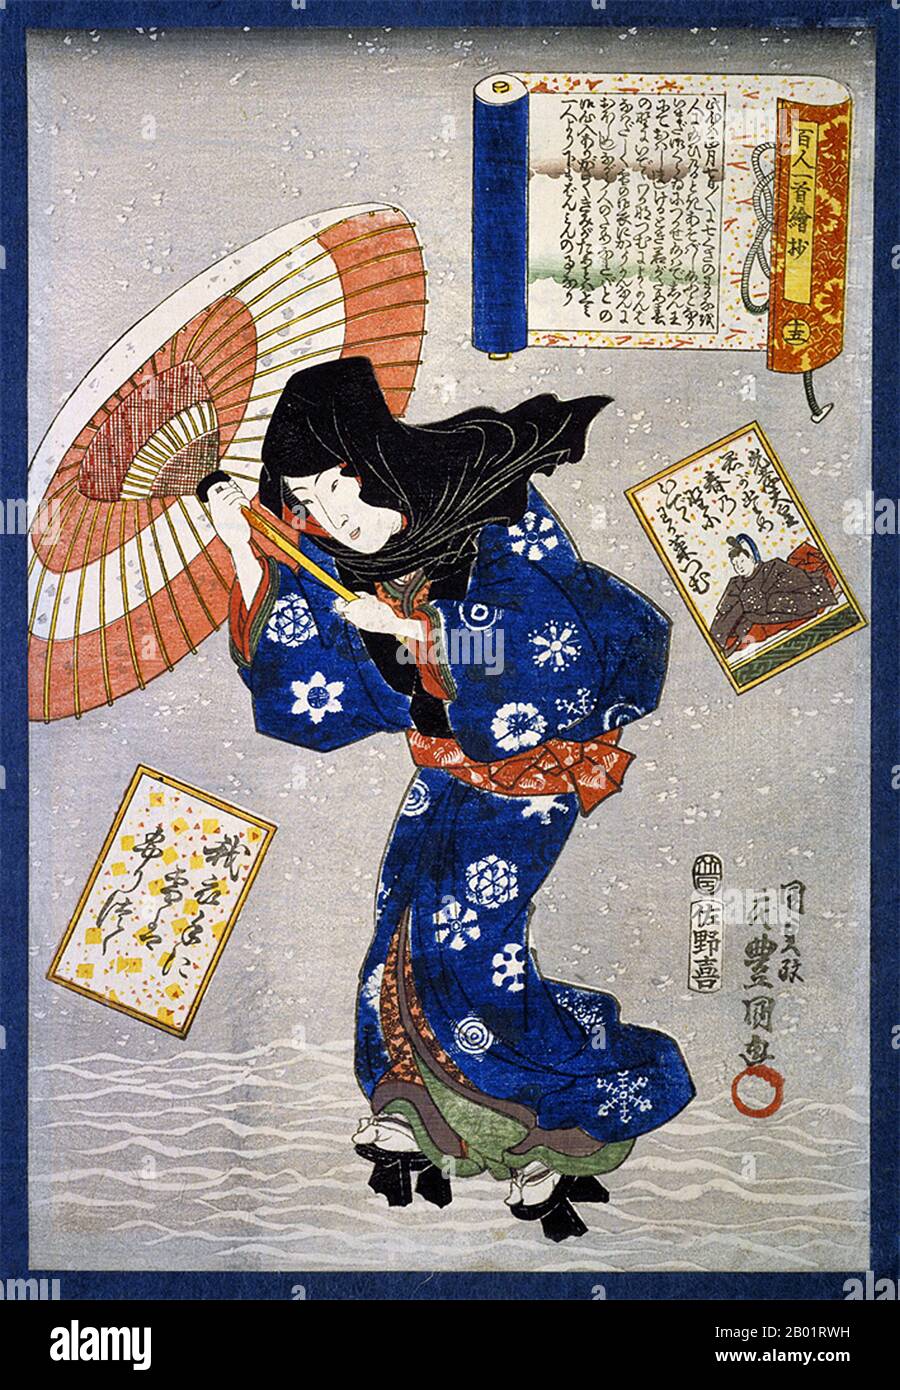 Japon : 'scènes sélectionnées d'un poème chacune par cent poètes : poème de l'empereur Kōkō'. Estampe sur bois Ukiyo-e de Utagawa Kunisada (1786 - 12 janvier 1865), c. 1844. Utagawa Kunisada était le concepteur le plus populaire, prolifique et financièrement prospère de gravures sur bois ukiyo-e au Japon du 19e siècle. En son temps, sa réputation dépasse de loin celle de ses contemporains, Hokusai, Hiroshige et Kuniyoshi. Une spécialité était bijin, ou gravures sur bois de belles femmes, comme ici. Banque D'Images